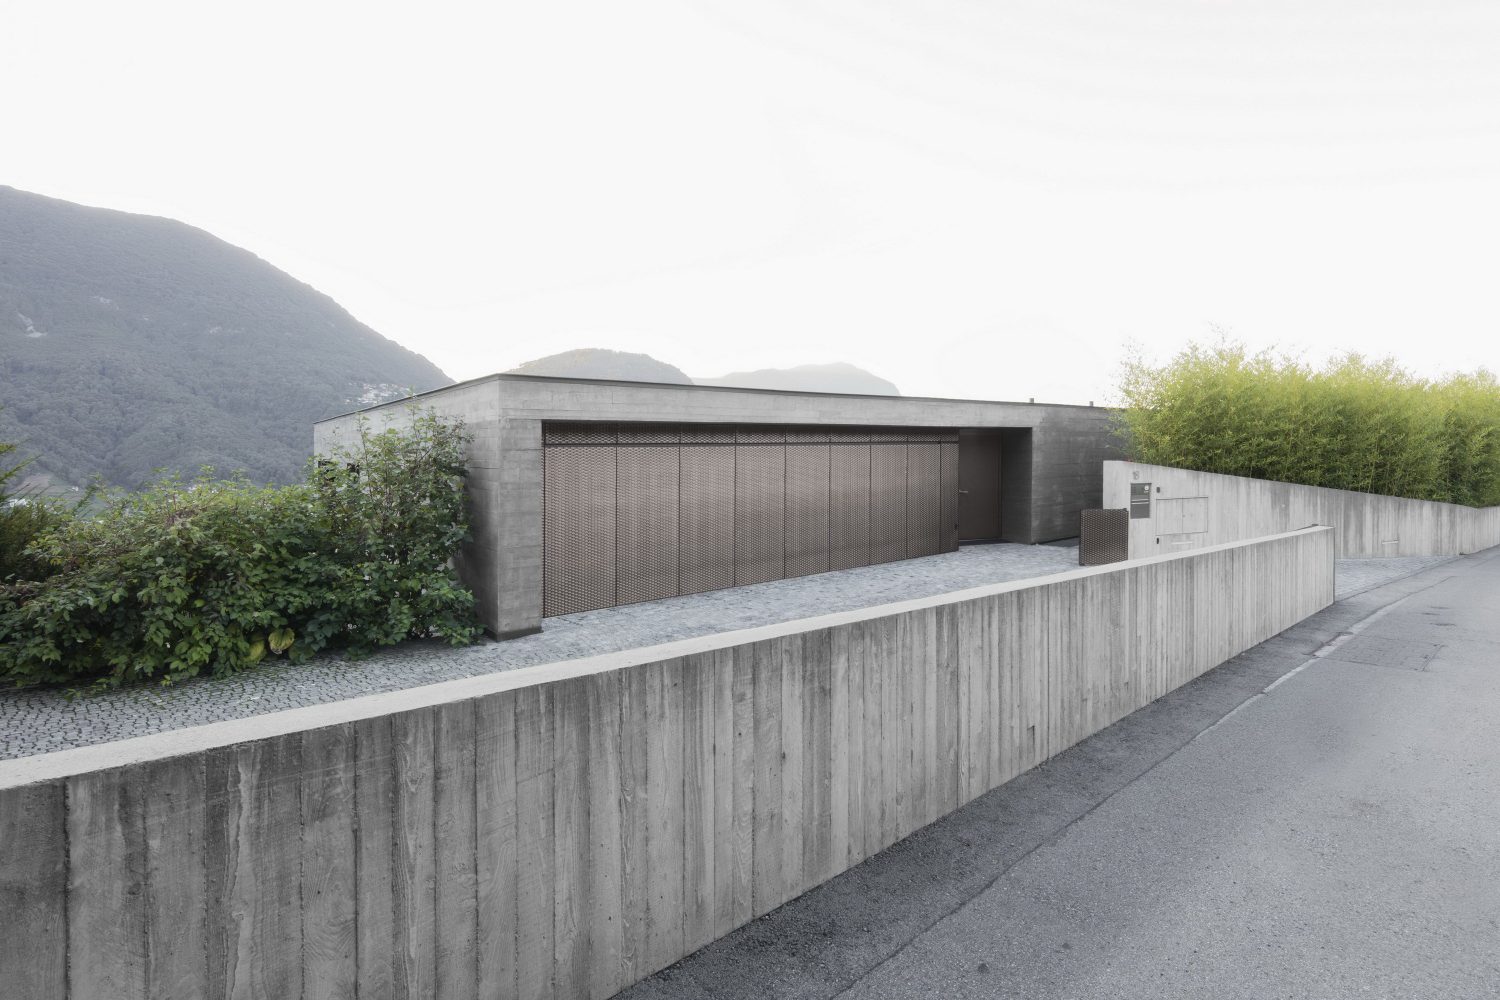 Villa Comano by Attilio Panzeri & Partners